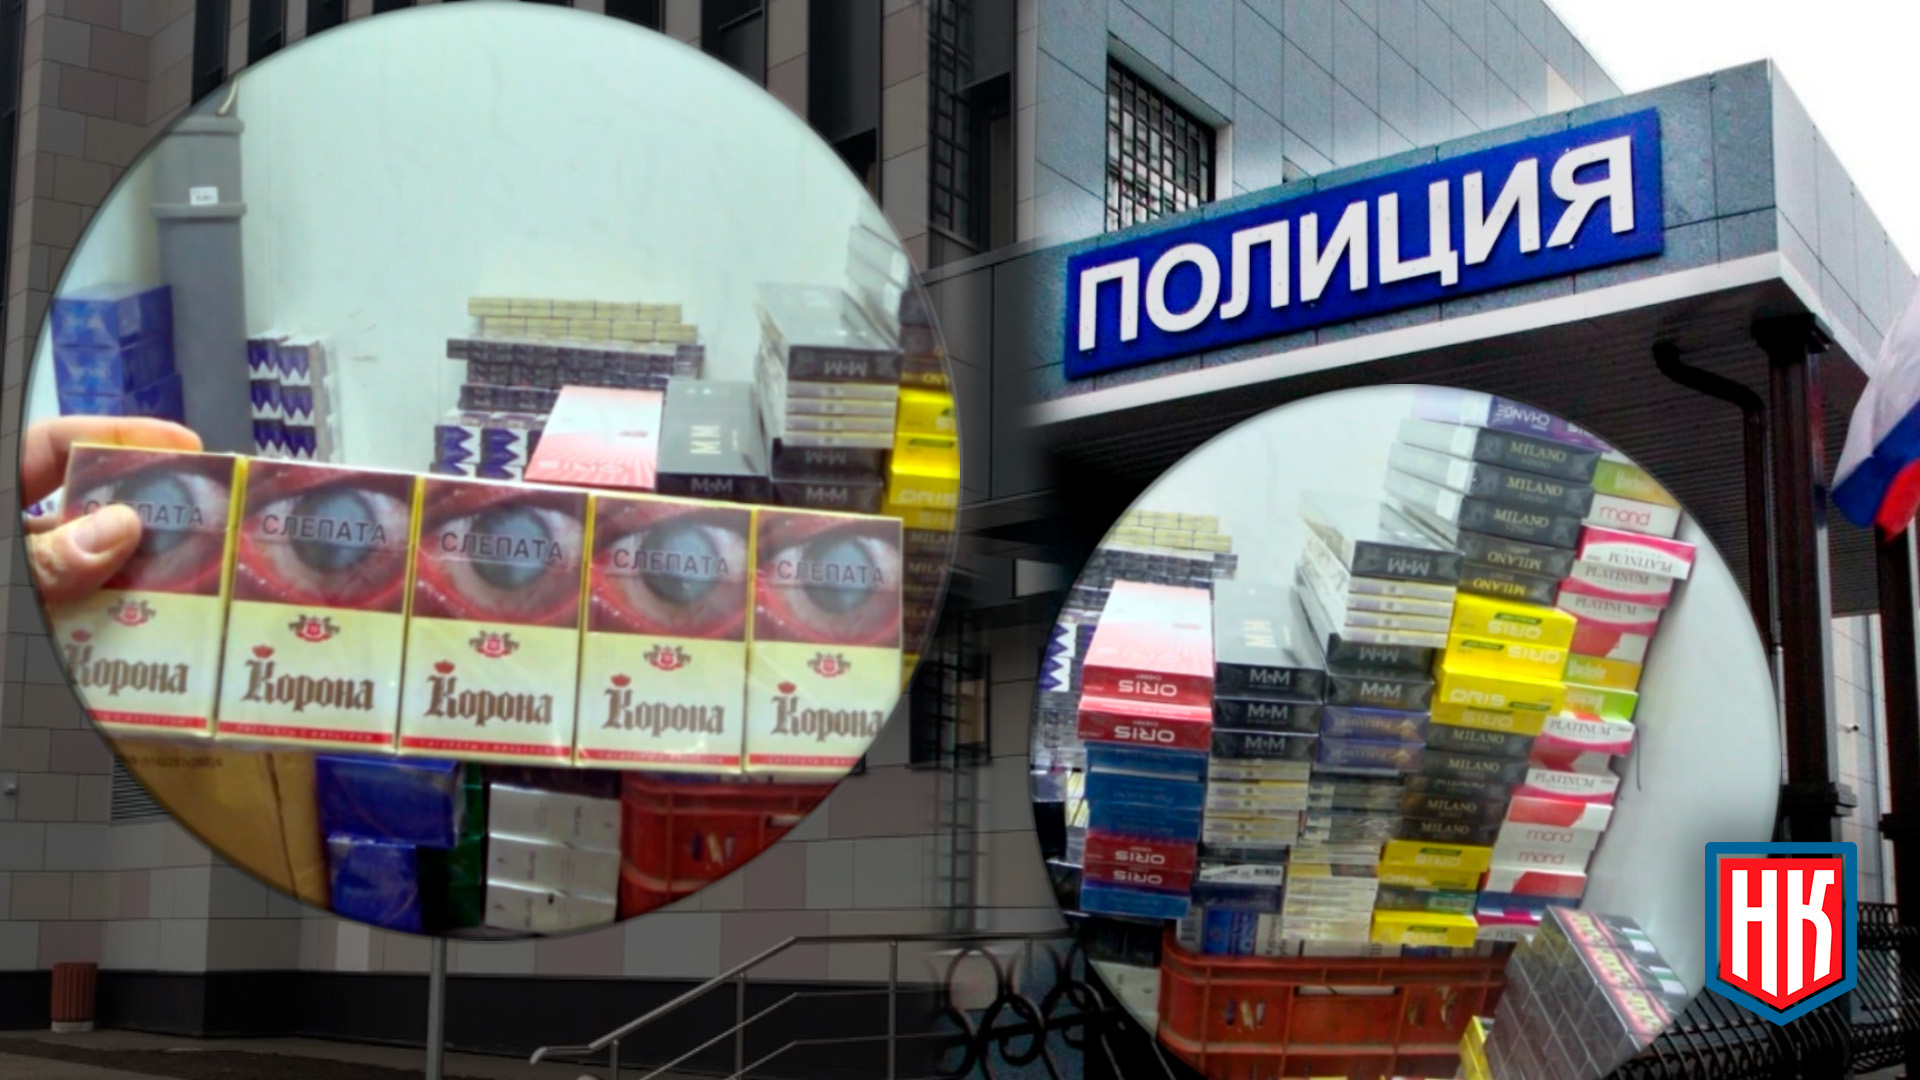 Екатеринбург: торгуют контрафактом напротив полиции – фото